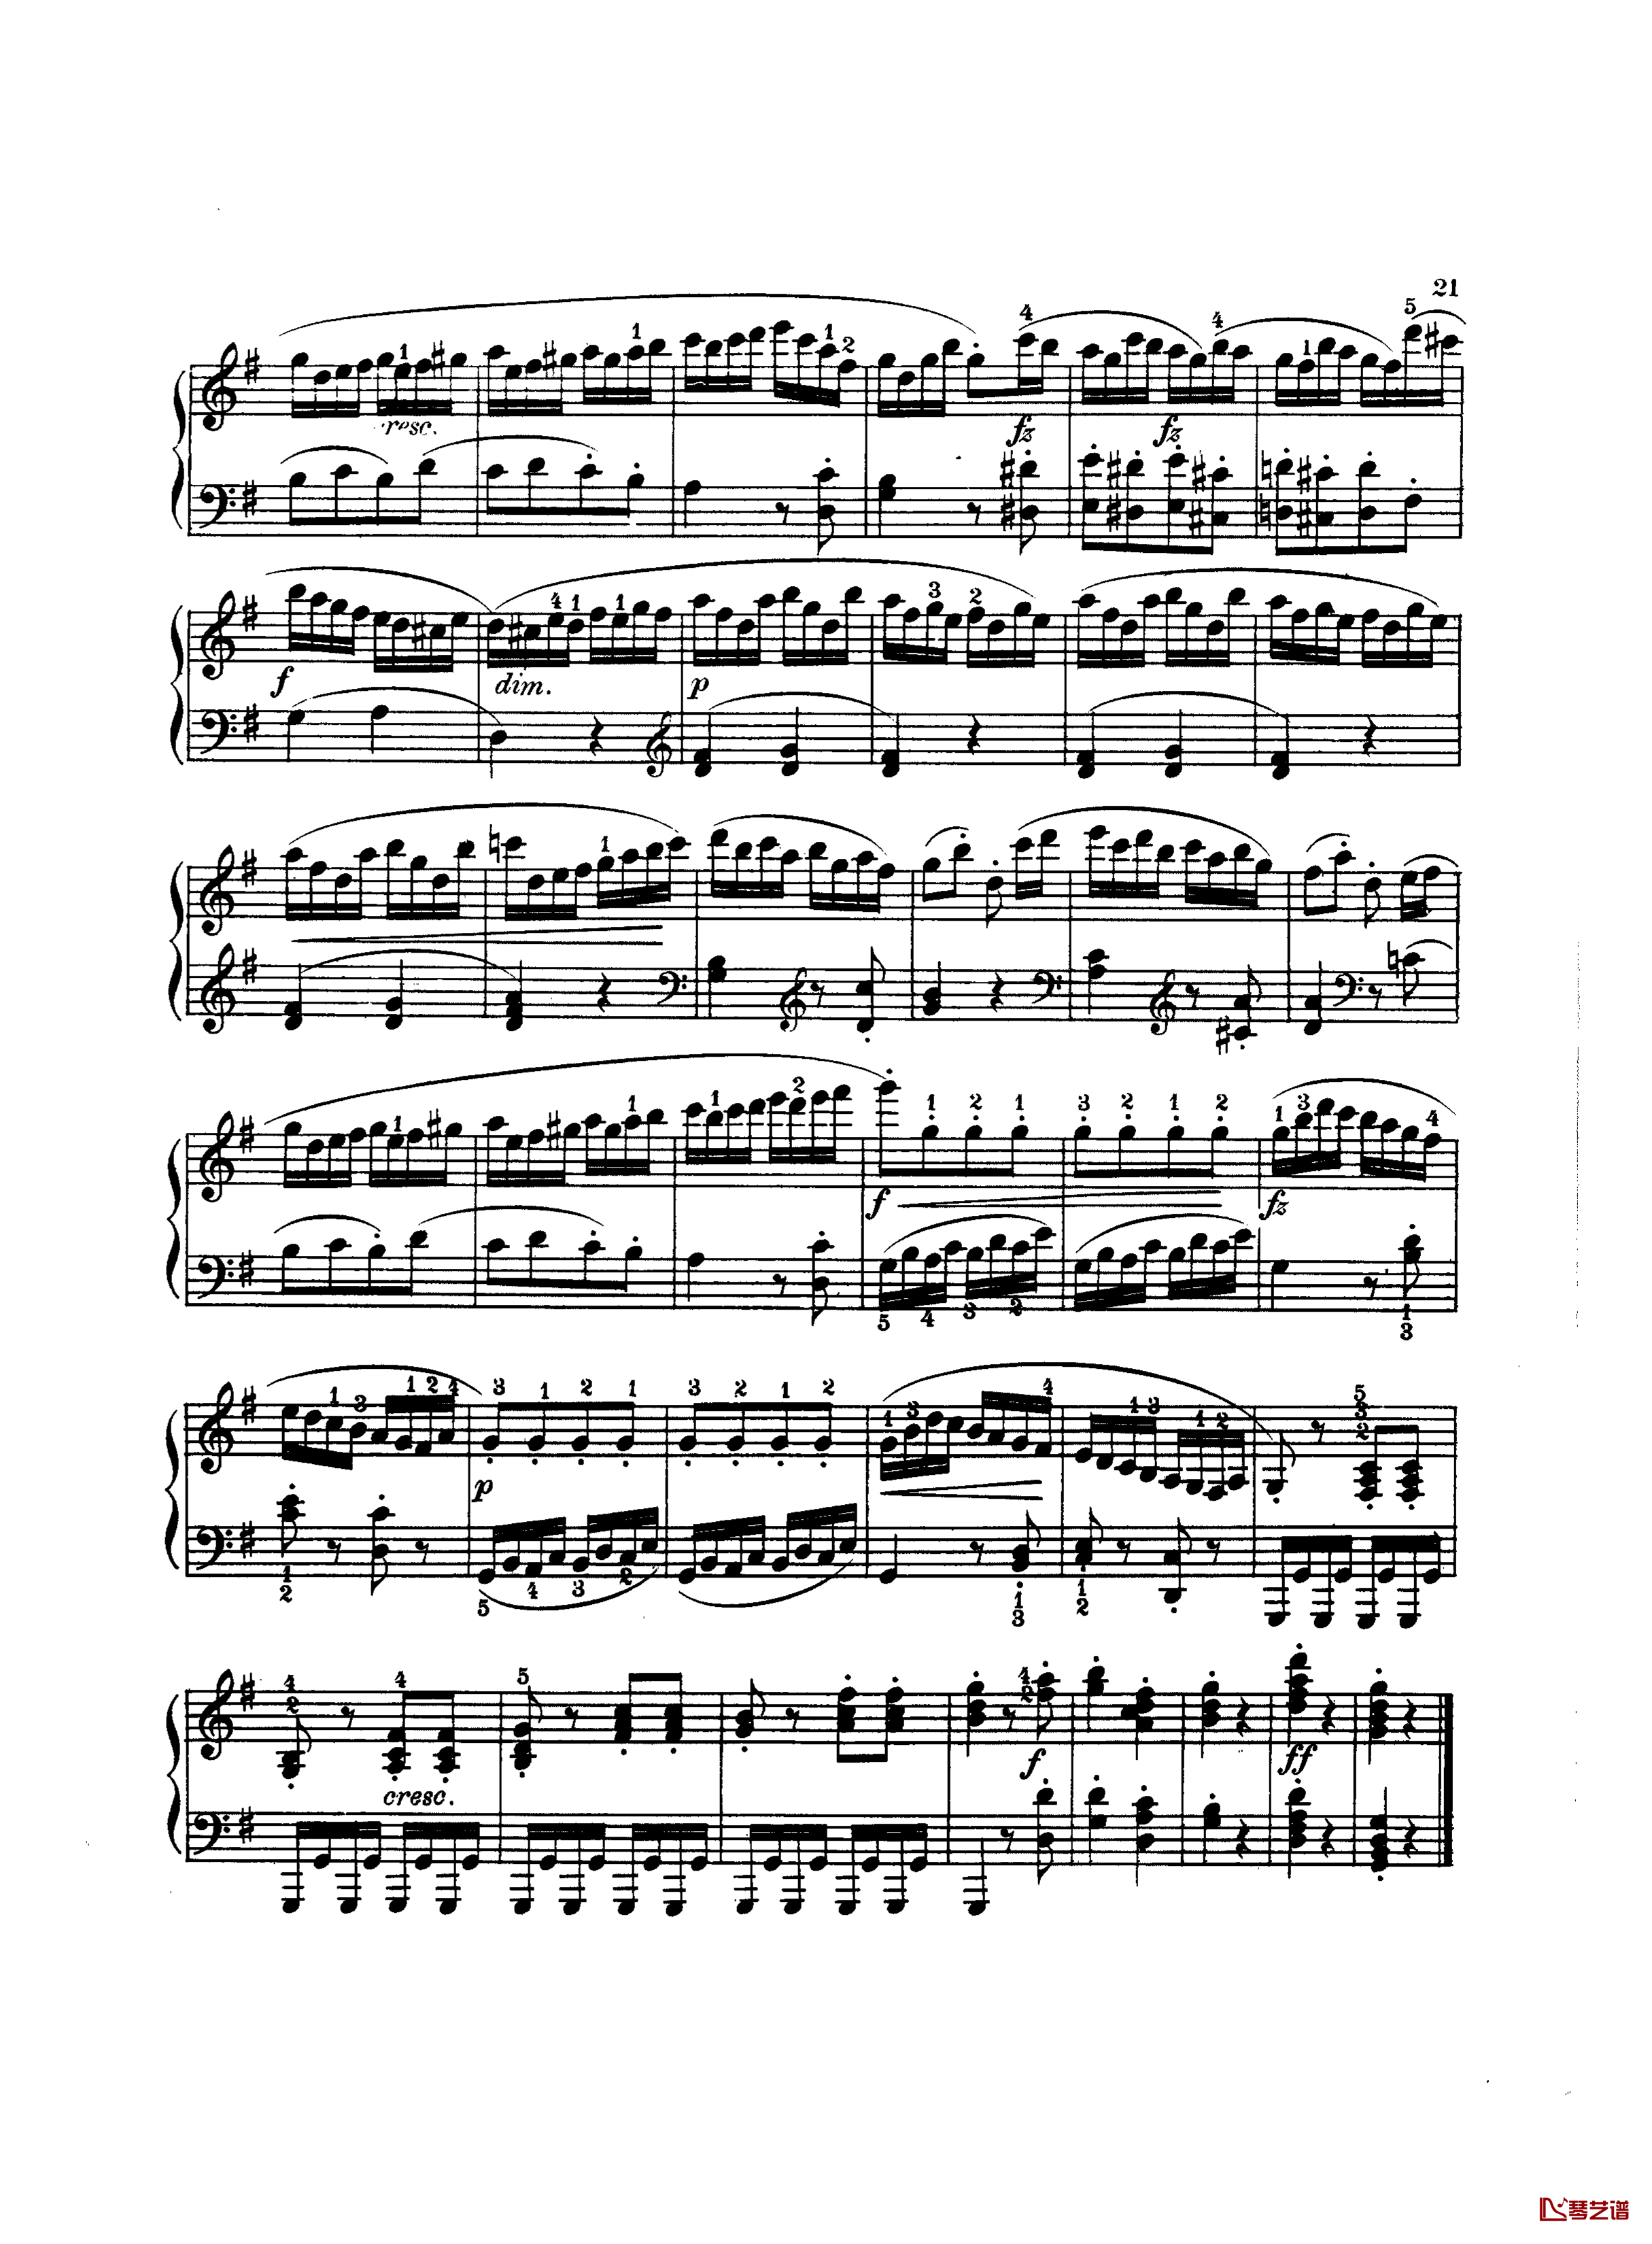 吉普赛回旋曲钢琴谱-带指法版-海顿6